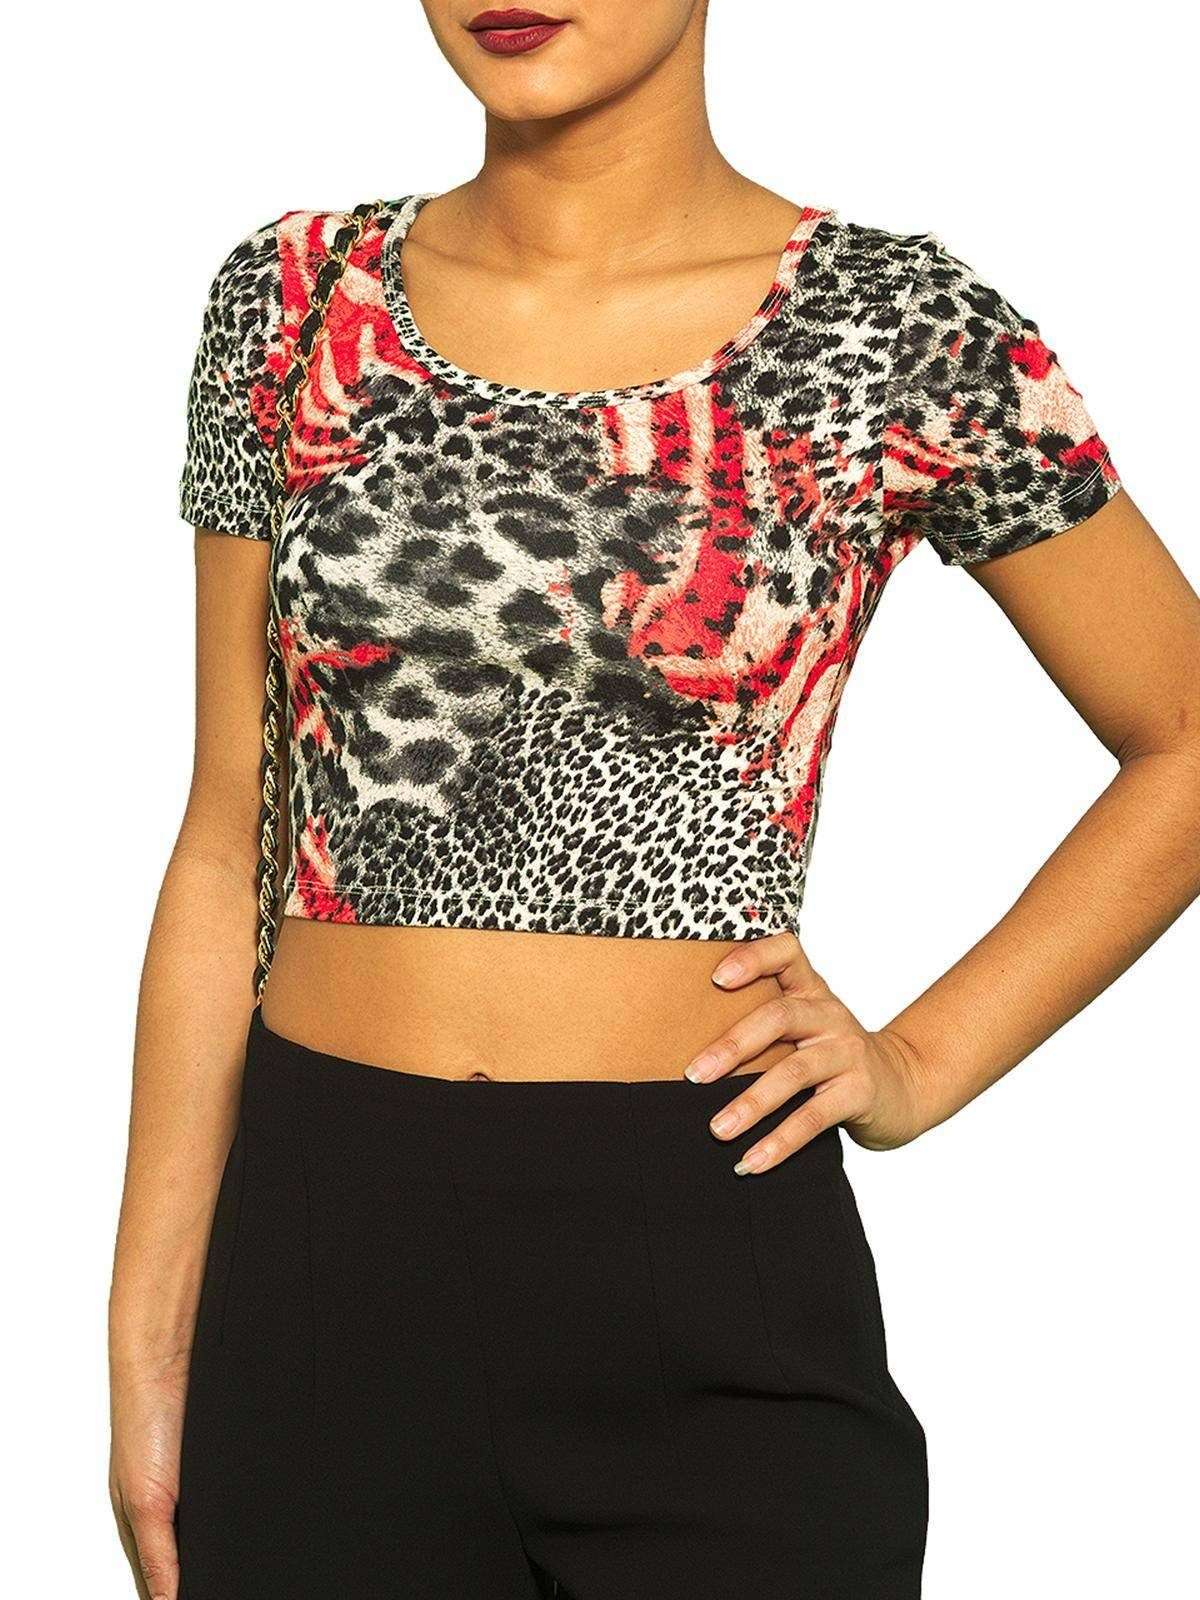 Укороченный топ, рубашка с круглым вырезом, короткими рукавами и леопардовым принтом